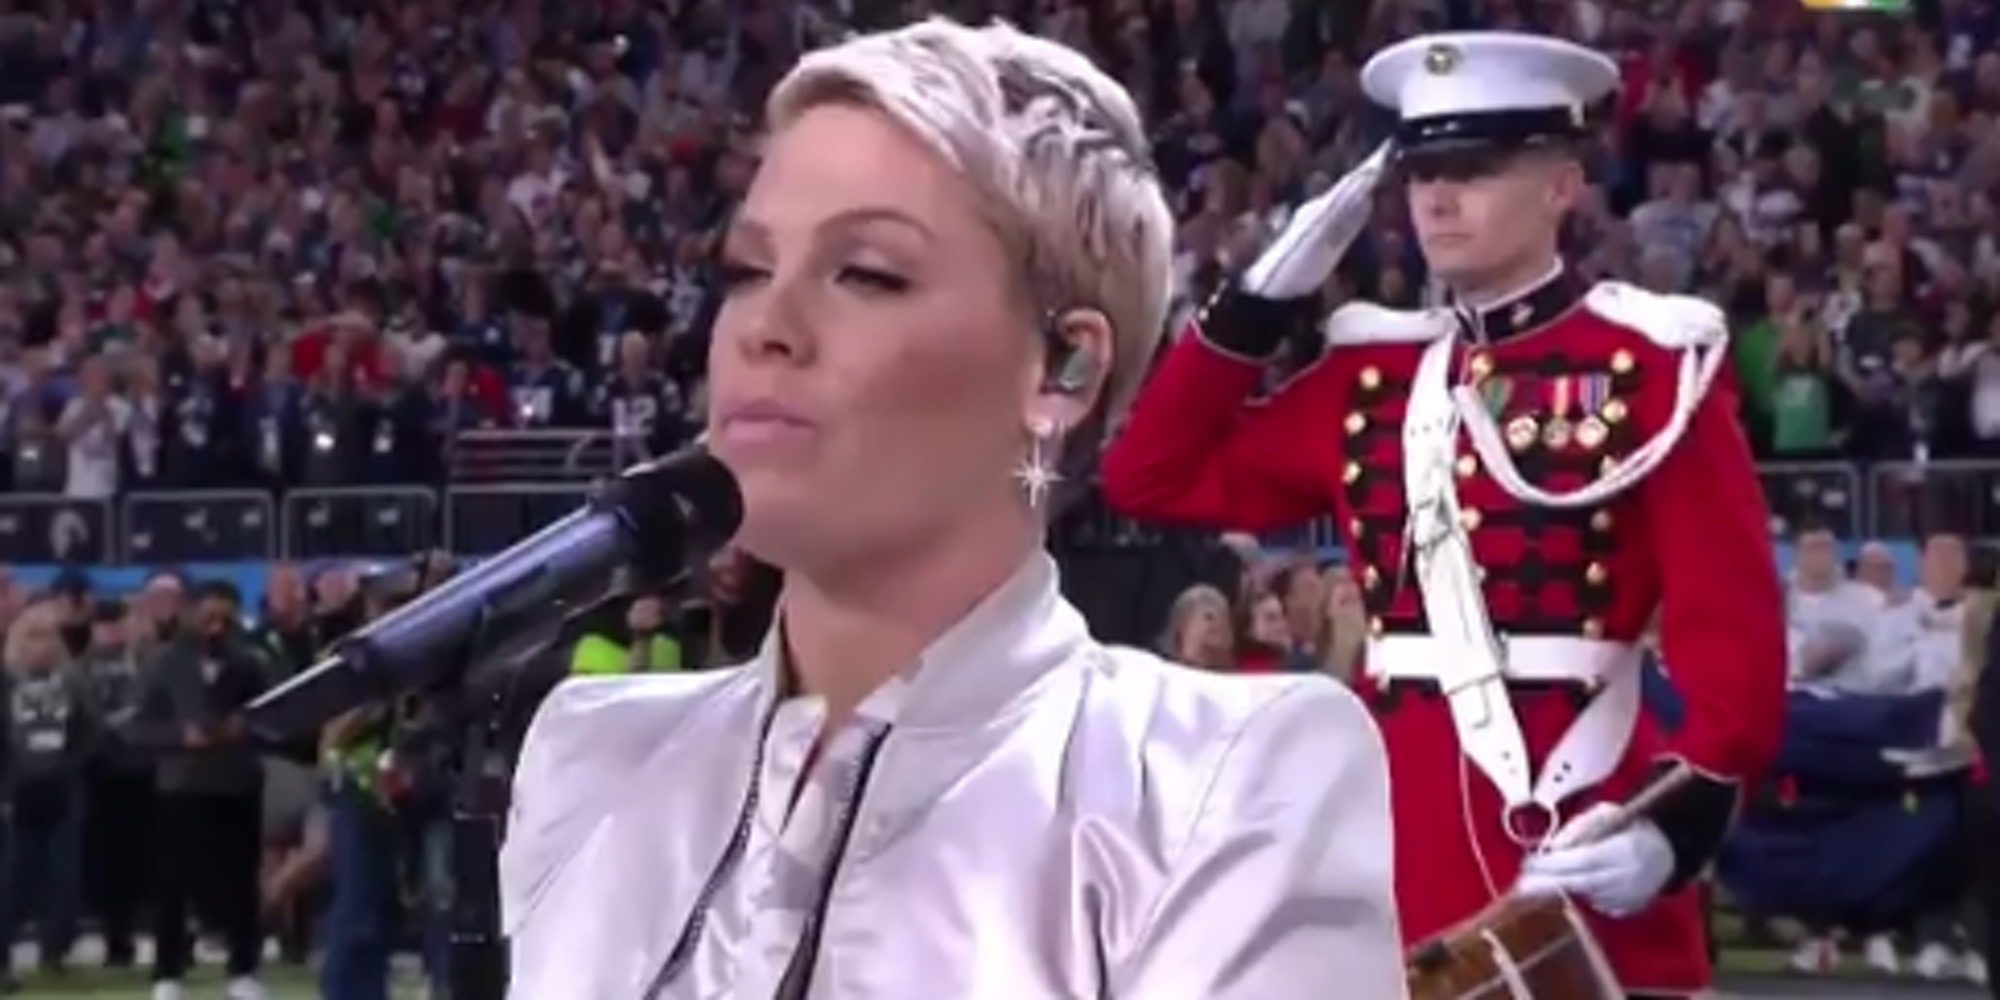 El momentazo de Pink sacándose un chicle de la boca antes de cantar el himno de EEEUU en la Super Bowl 2018